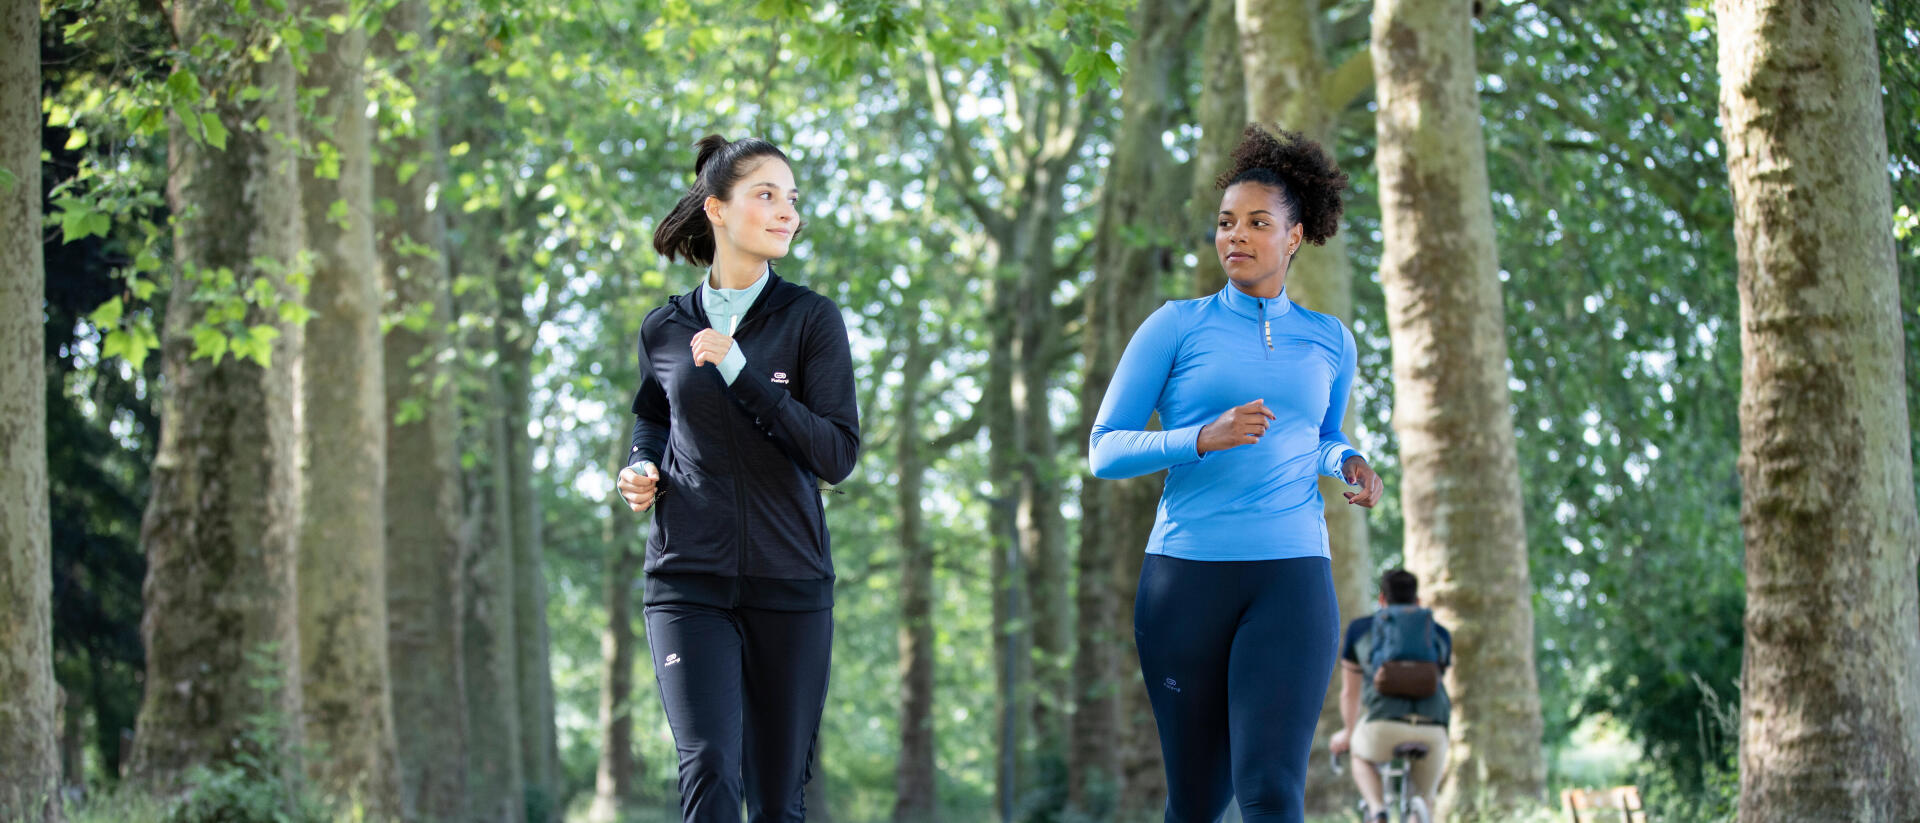 Fitness et course à pied : comment renforcer sa confiance en soi avec le sport ?